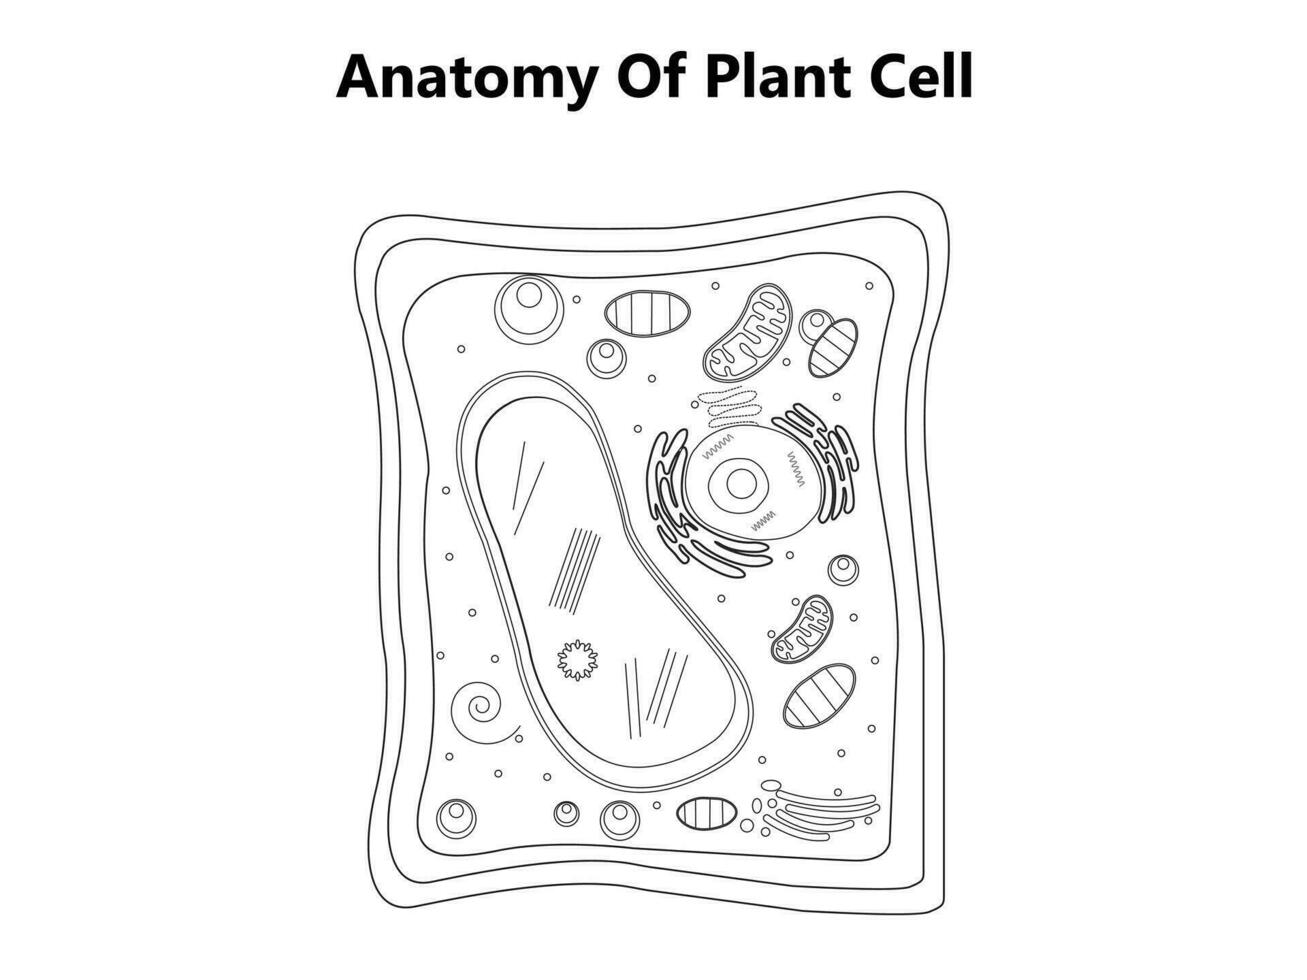 växt cell strukturera, anatomi infographic diagram med delar platt vektor illustration design för biologi vetenskap utbildning skola bok begrepp mikrobiologi organism schema etiketter av komponenter